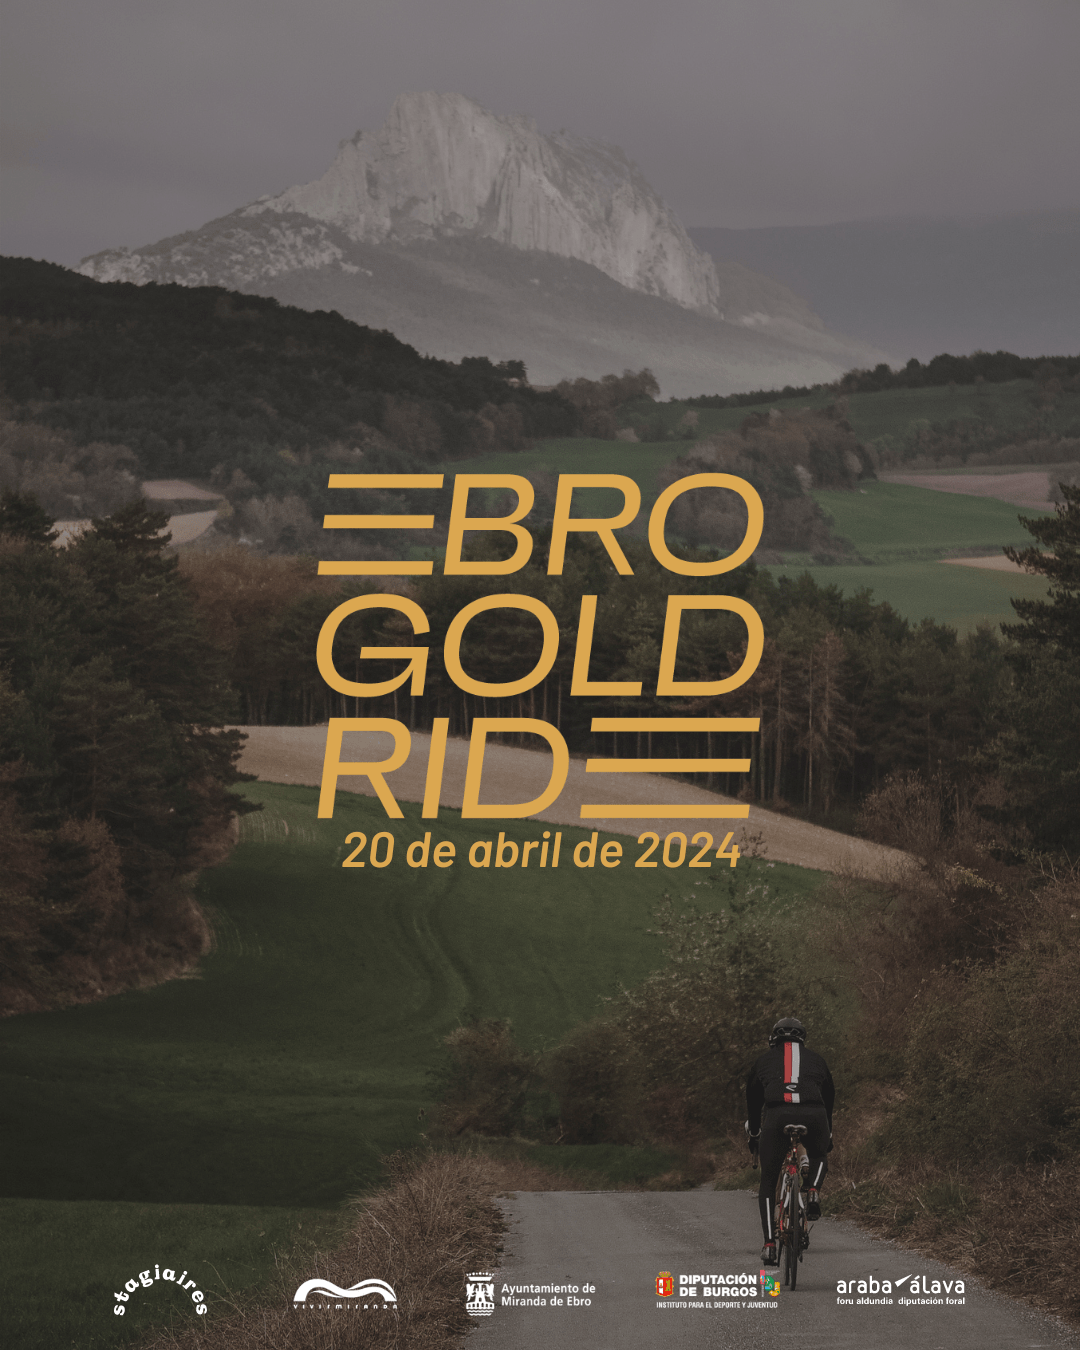 Ebro Gold Rade - Miranda